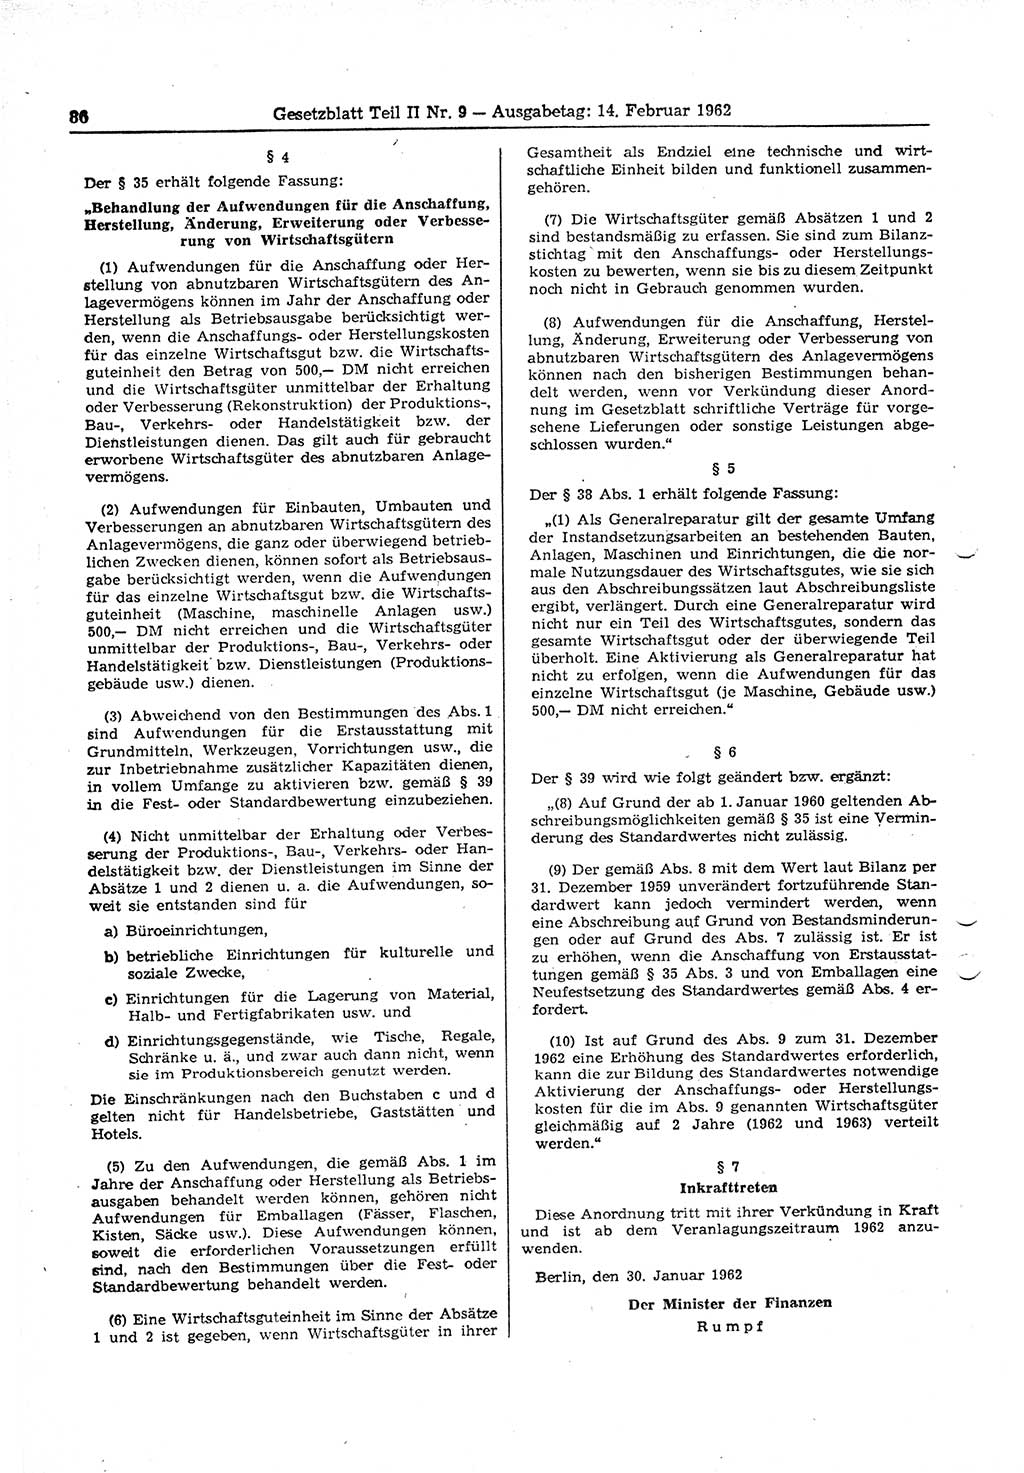 Gesetzblatt (GBl.) der Deutschen Demokratischen Republik (DDR) Teil ⅠⅠ 1962, Seite 86 (GBl. DDR ⅠⅠ 1962, S. 86)